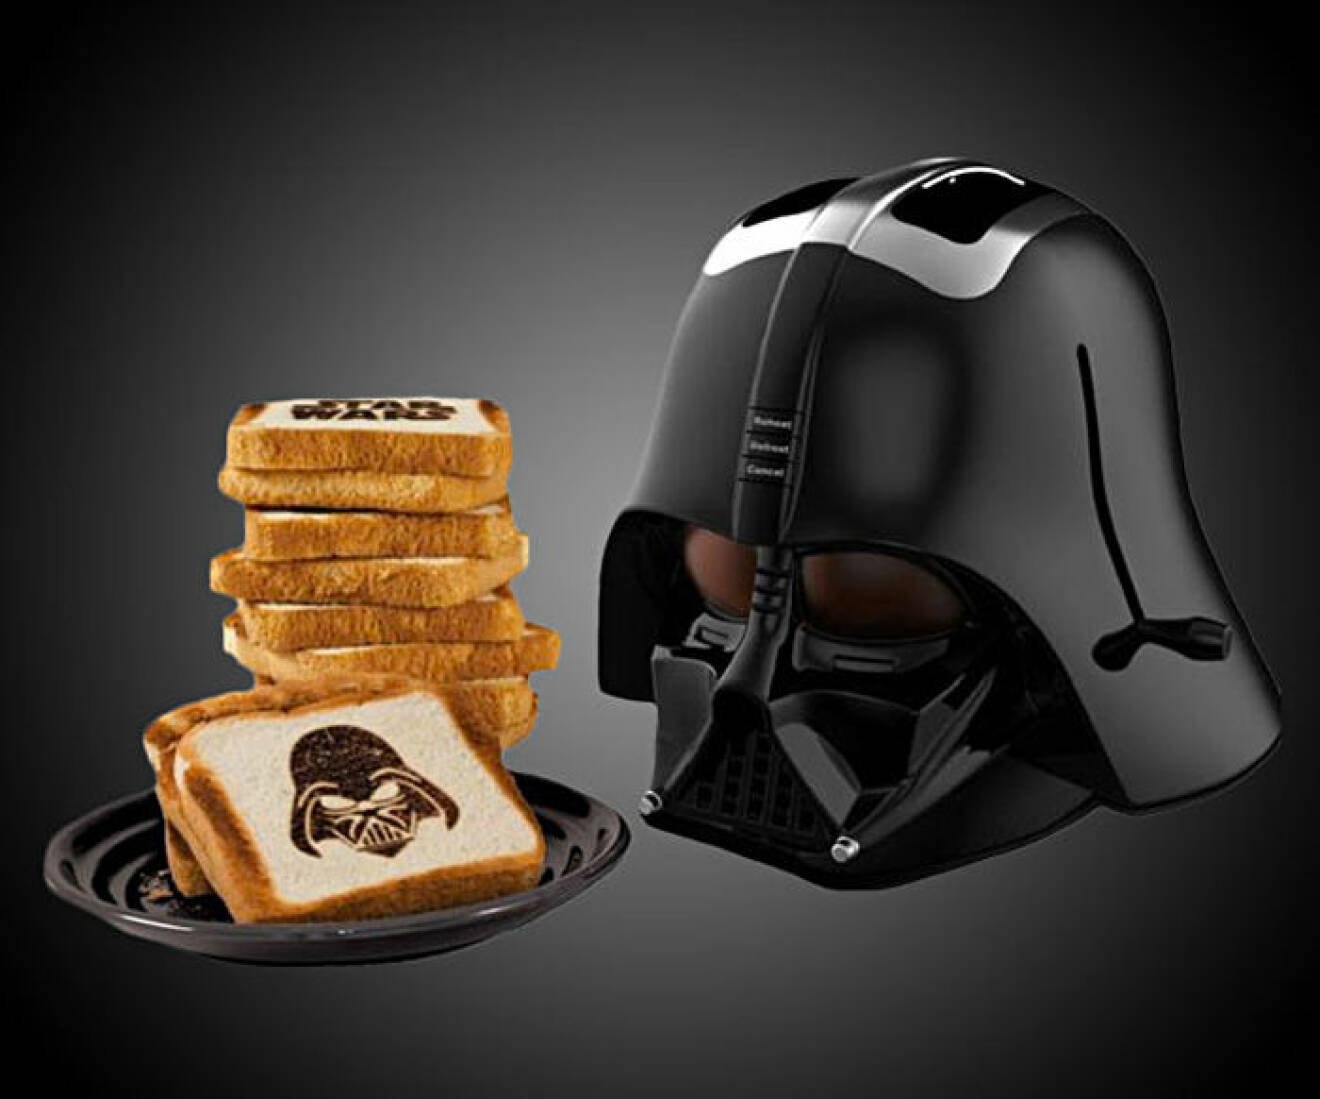 Star Wars-brödrost med Darth Vader.